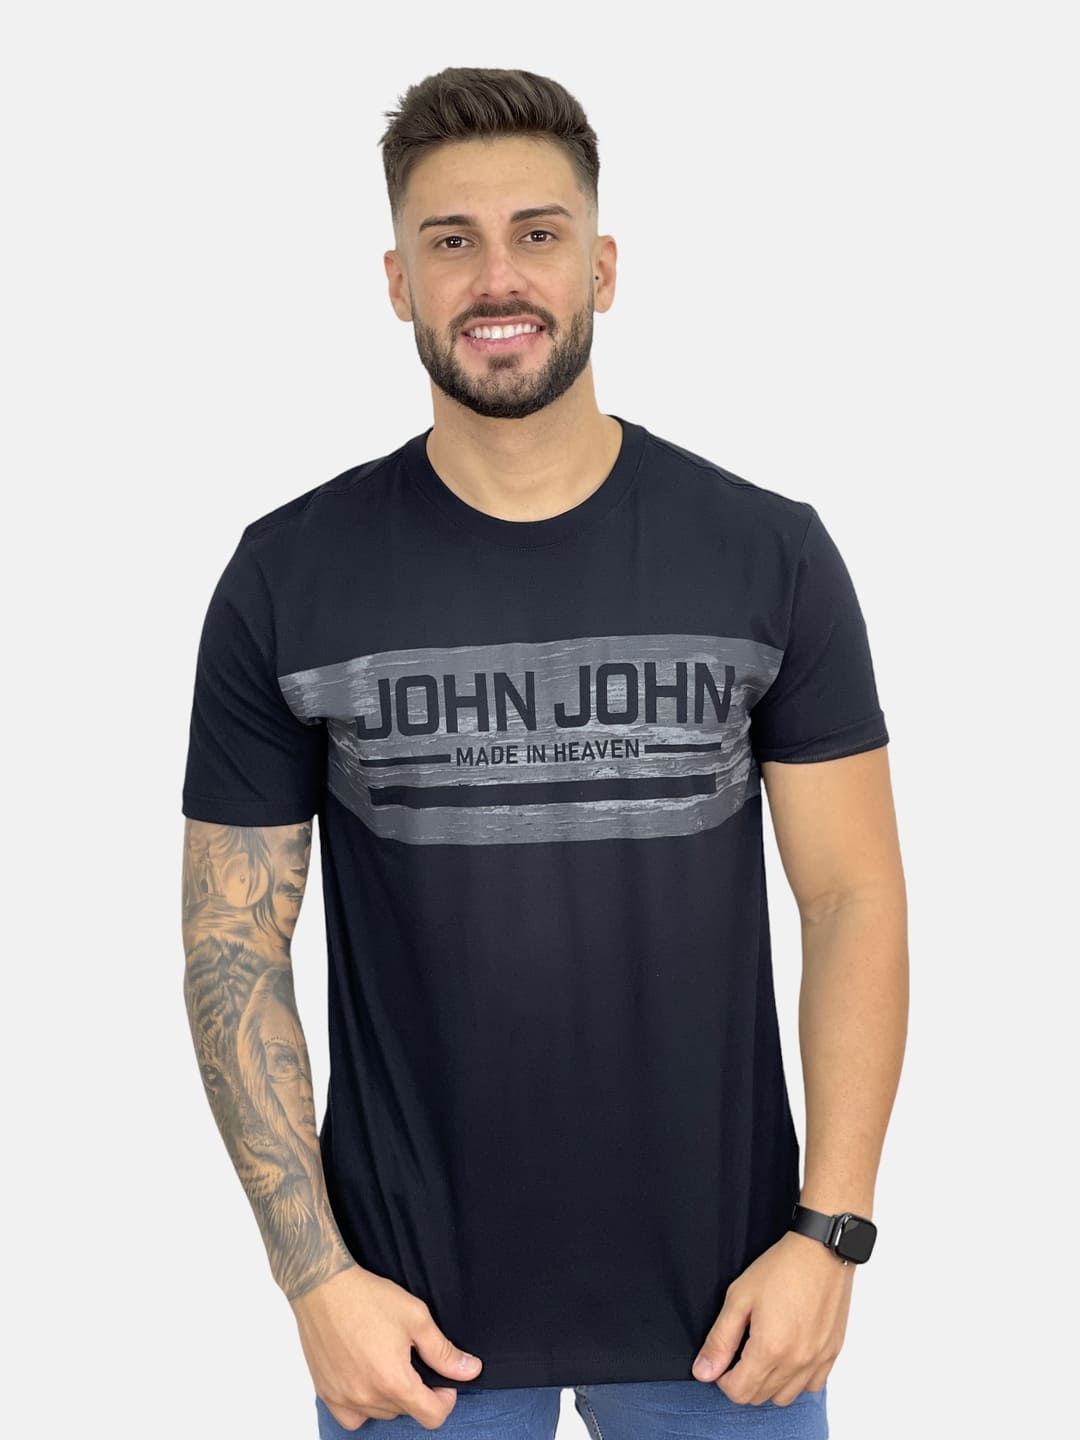 Camiseta John John Music In Heaven Preta - Faz a Boa!, camiseta john john  made in heaven